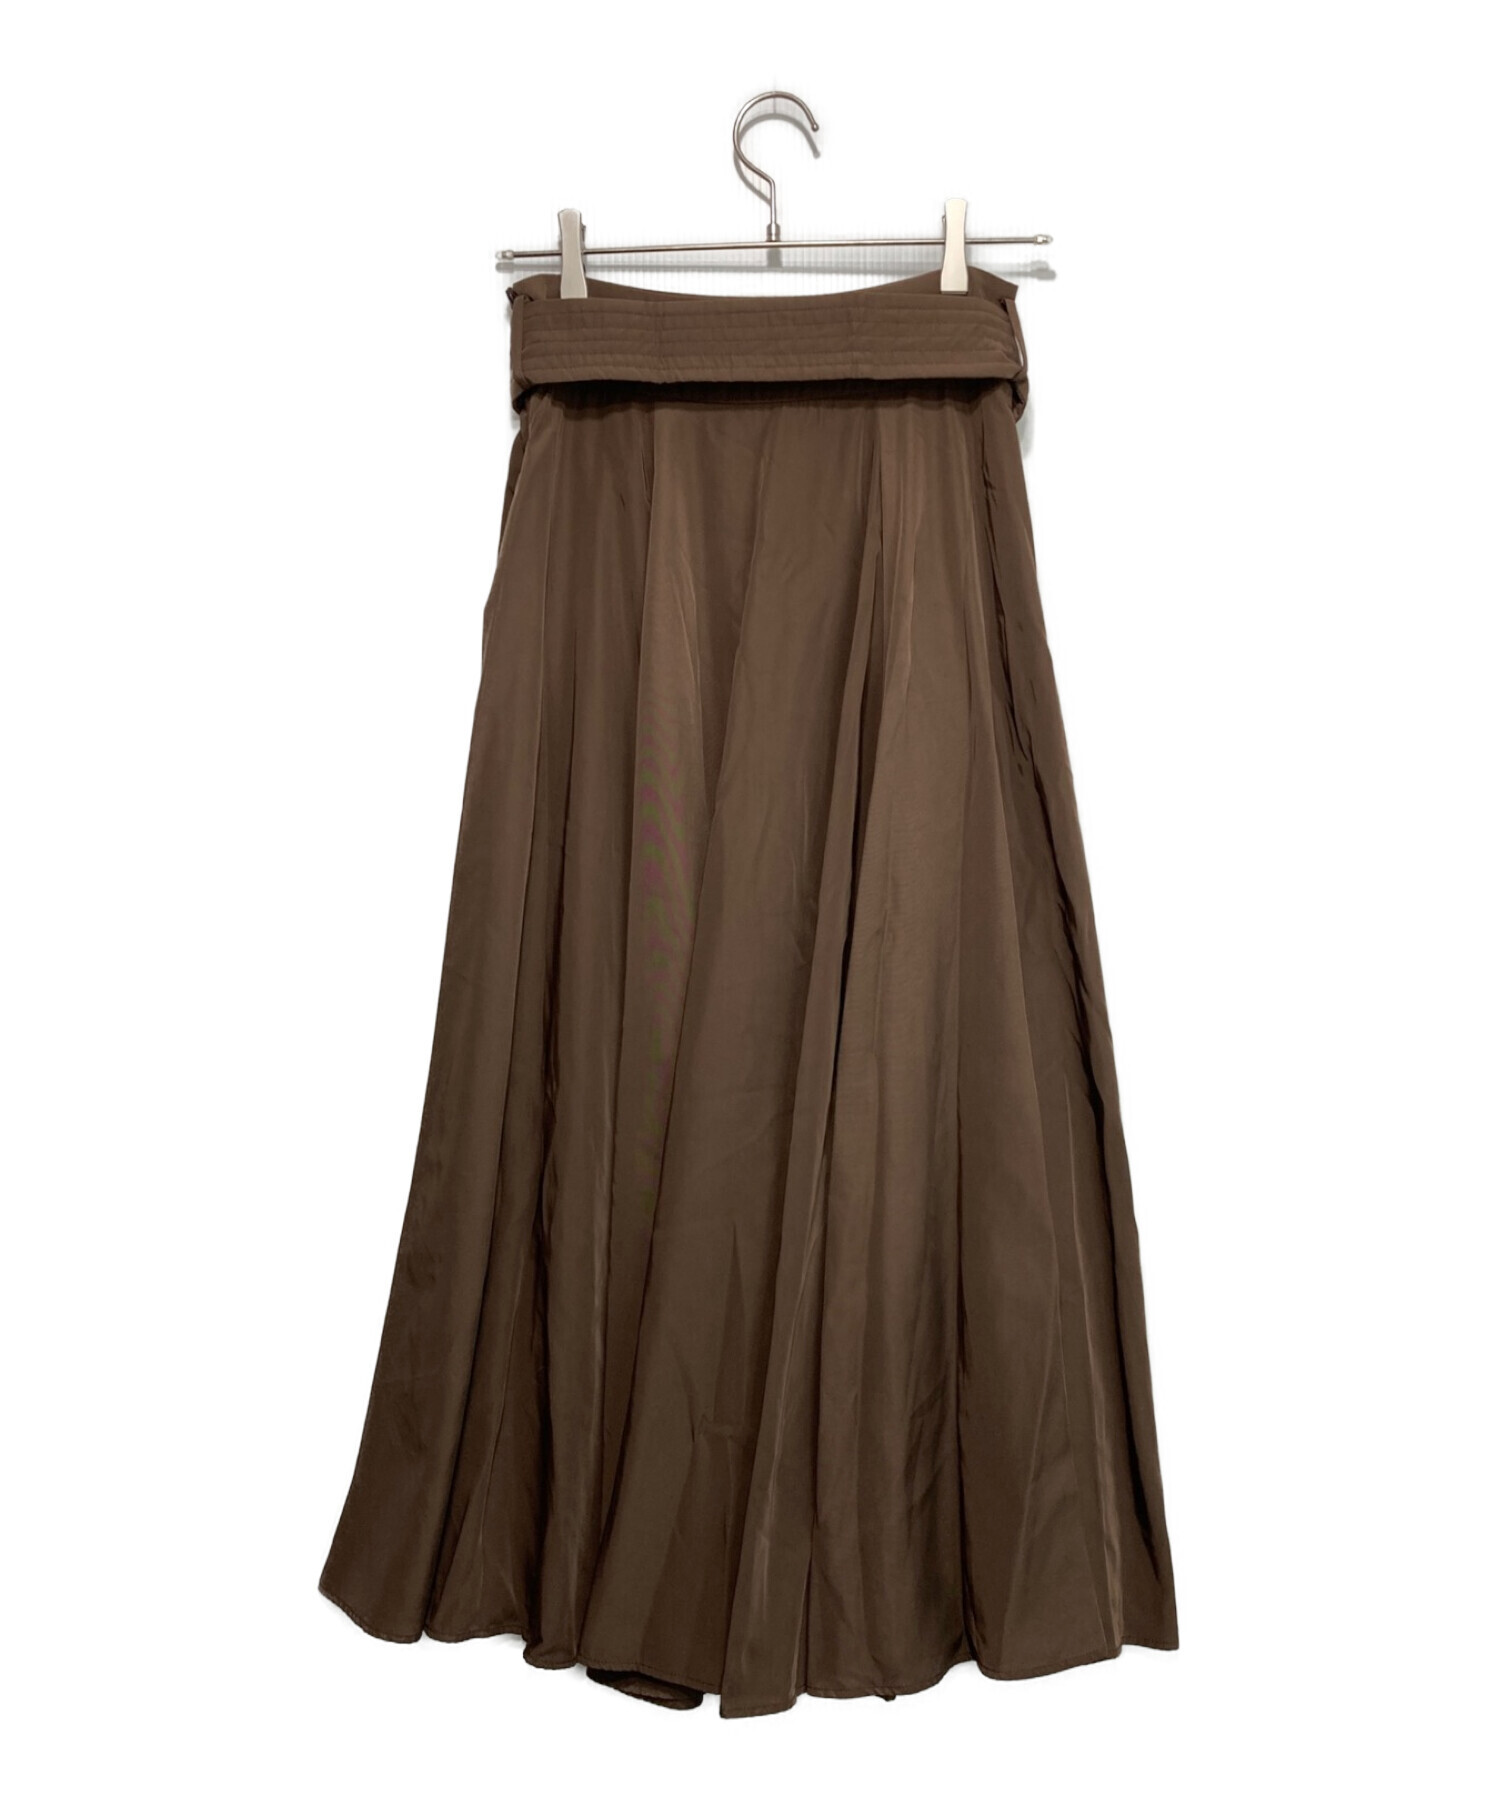 Snidel (スナイデル) サーキュラースカート ブラウン サイズ:1 未使用品